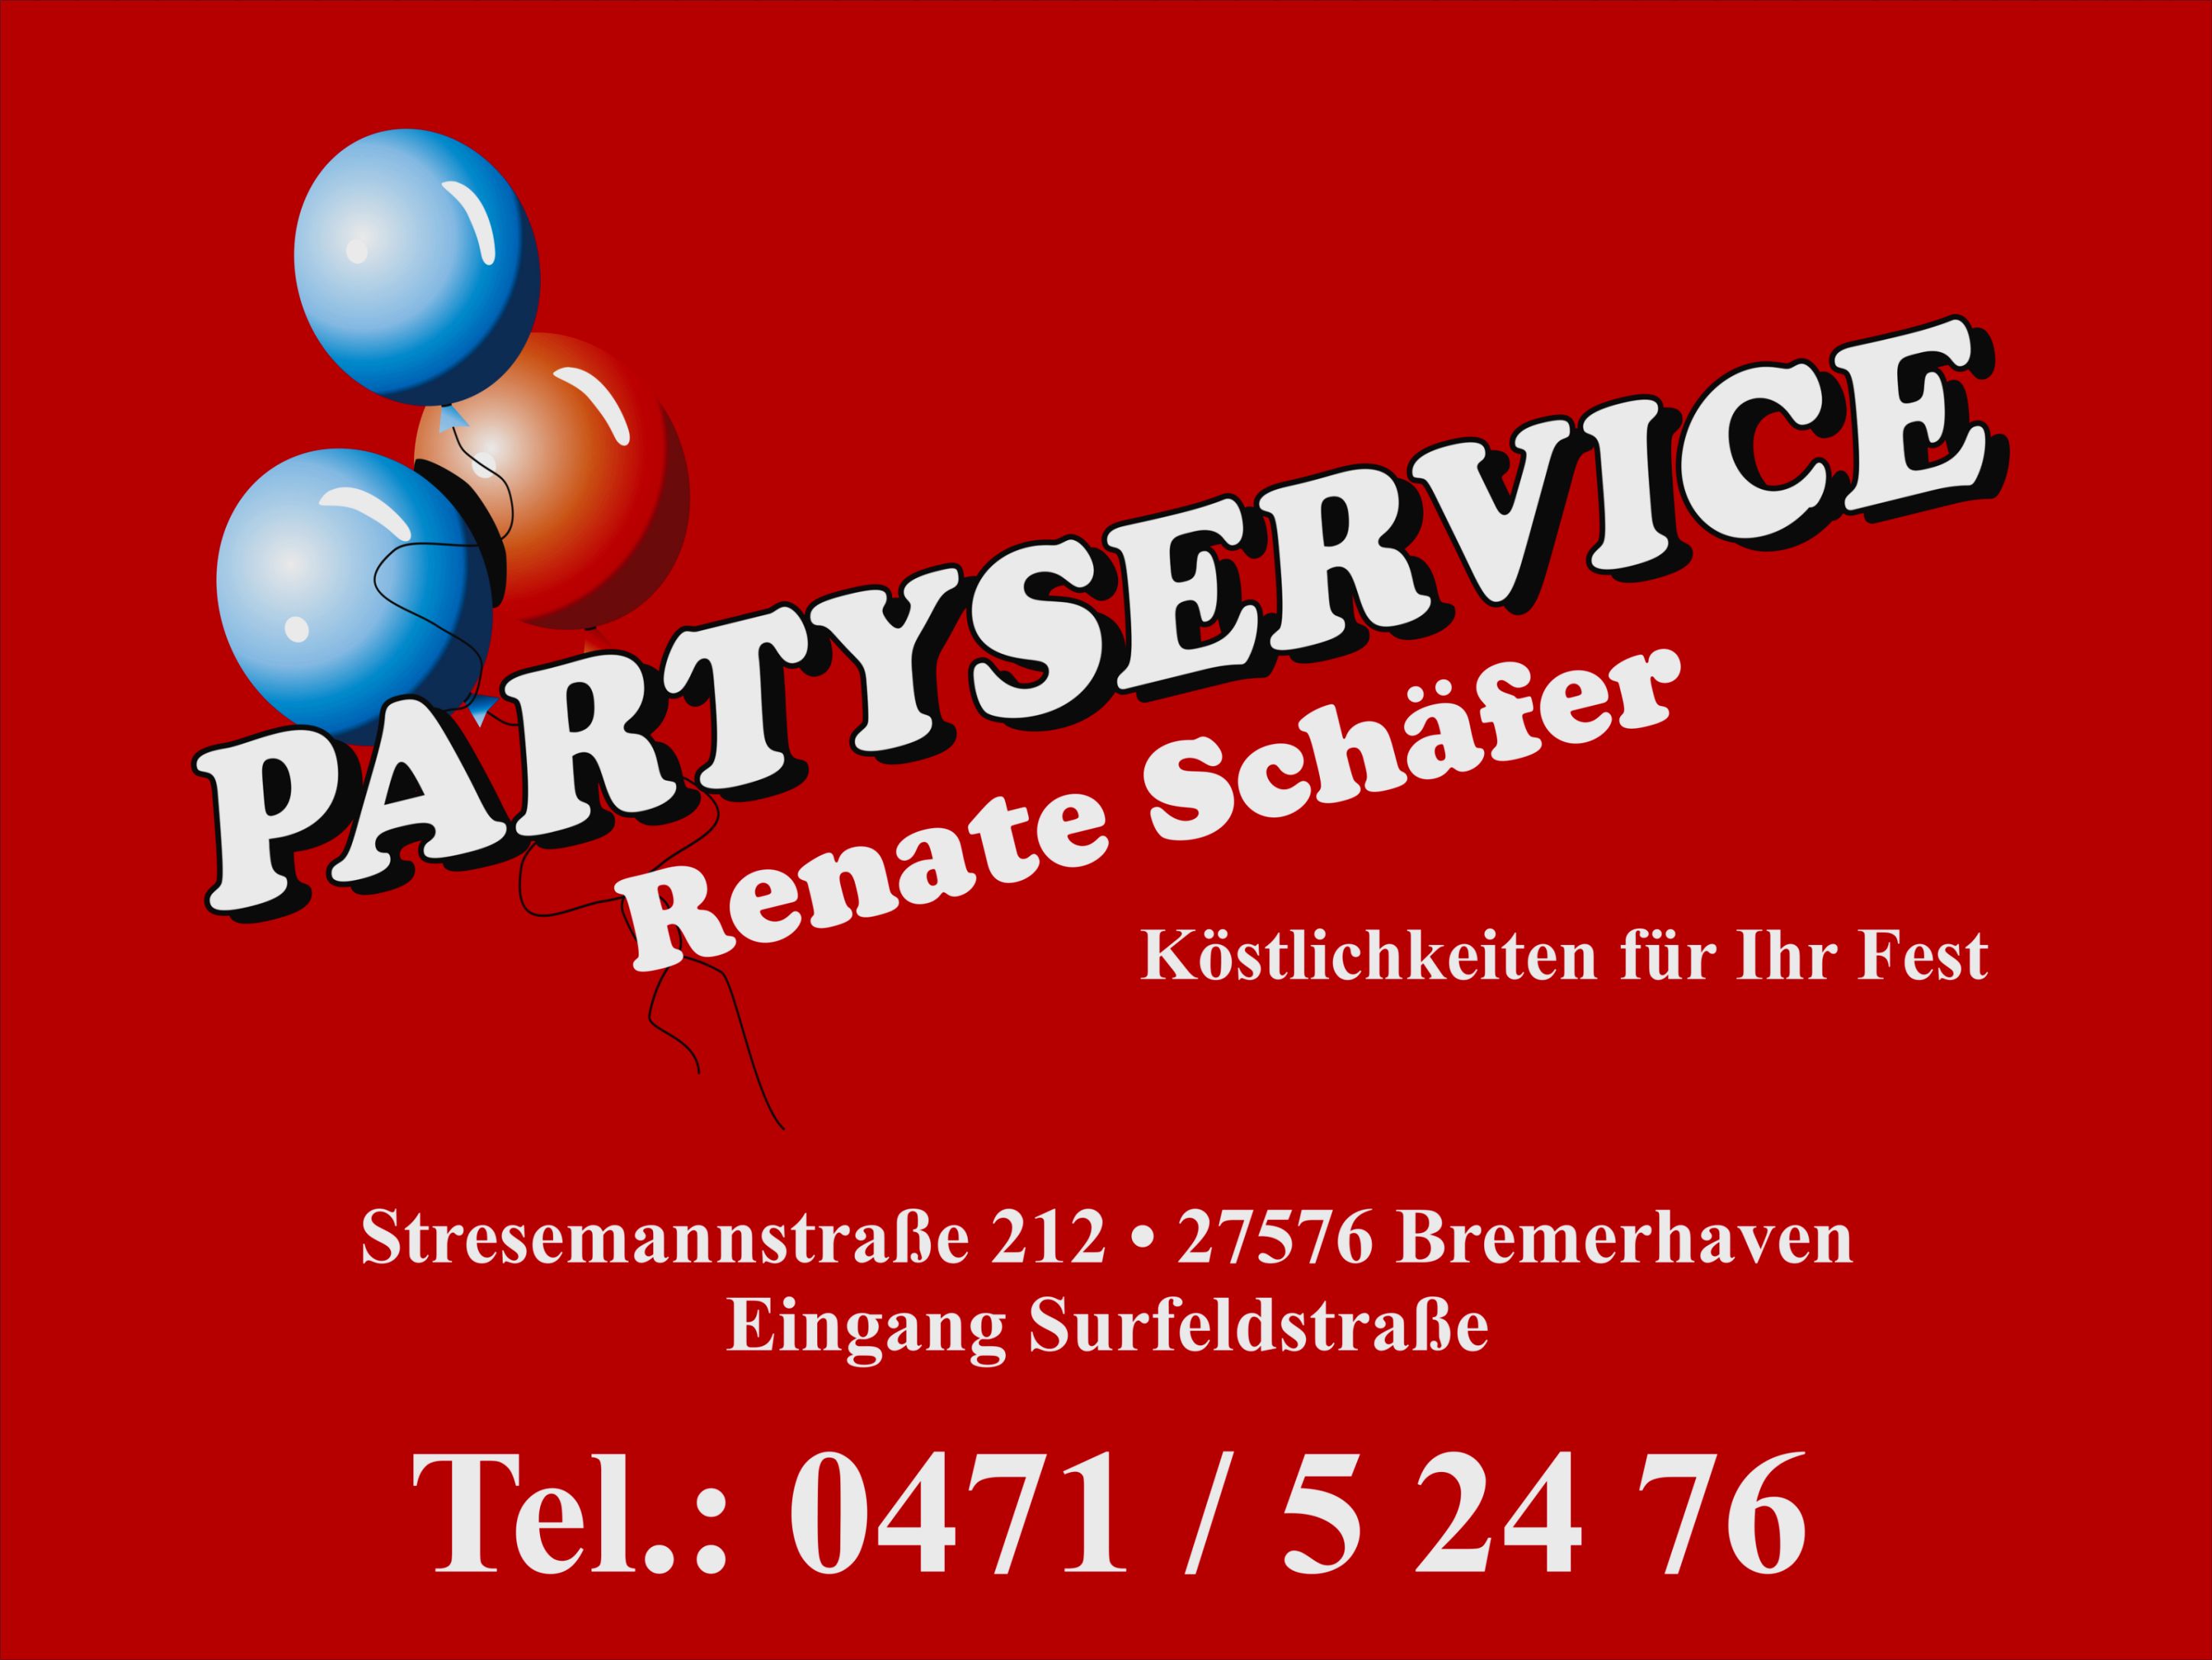 Partyservice Renate Schäfer